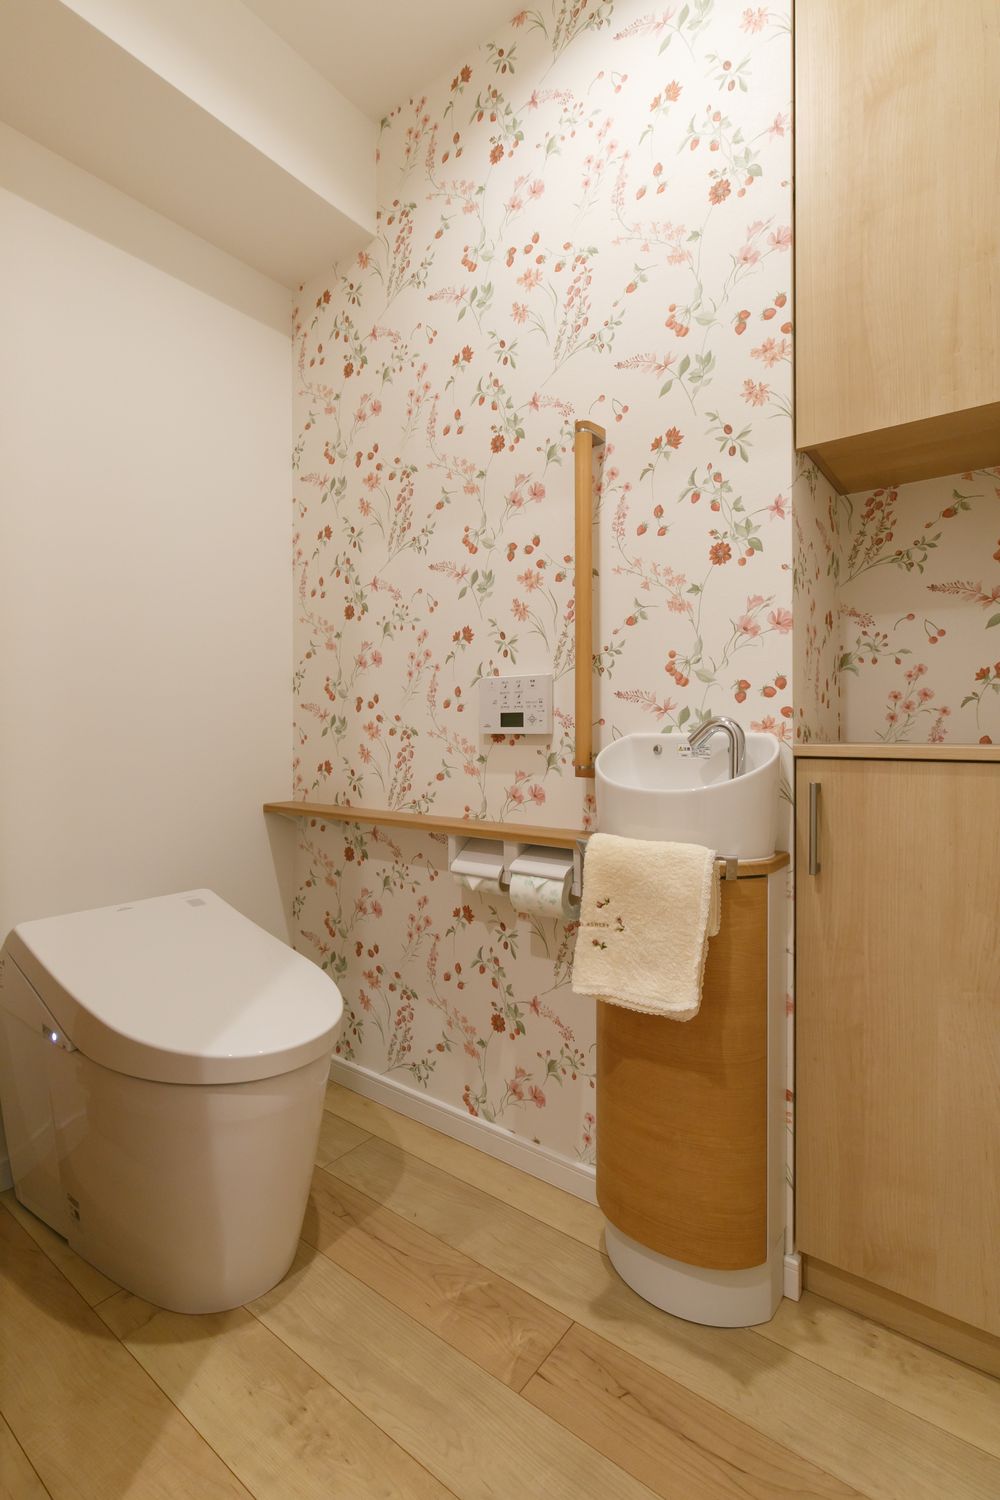 タンクレストイレと花柄の壁紙がかわいいトイレリフォーム事例